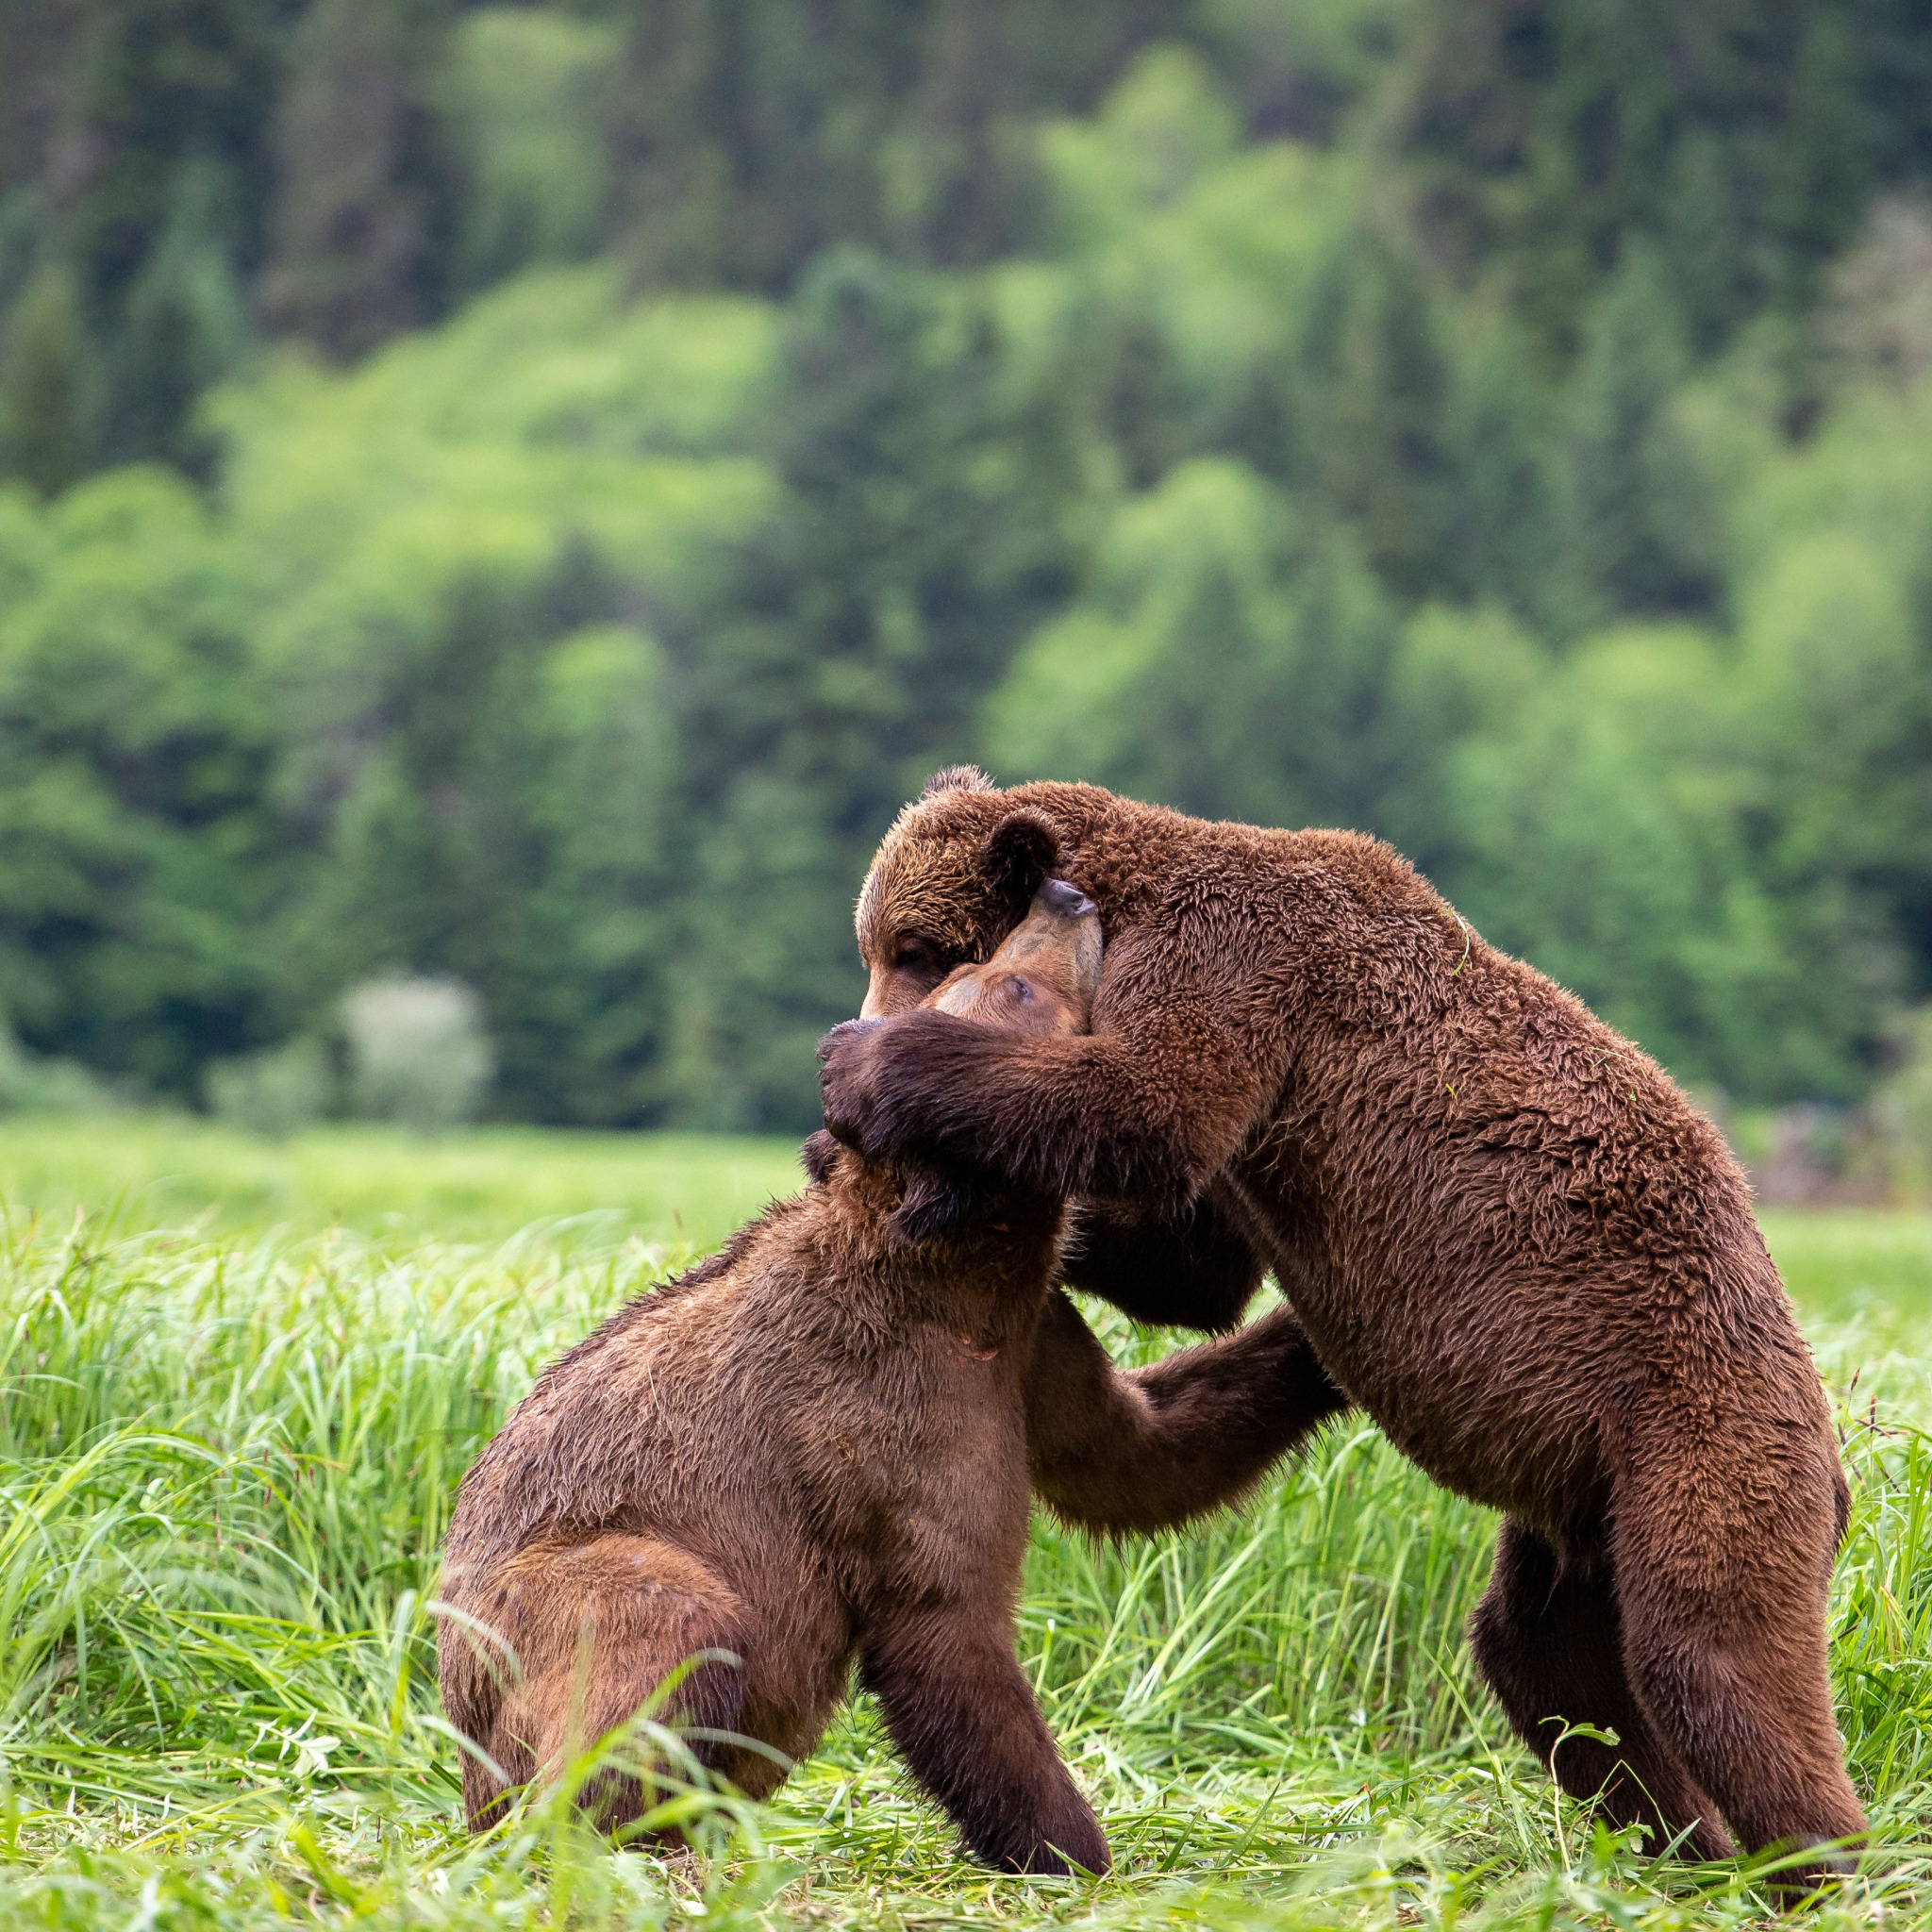 My friend bear. Медвежонок на полянке играет. Картинки 2 медвежонка в поле. Медведь в разных позах фото.